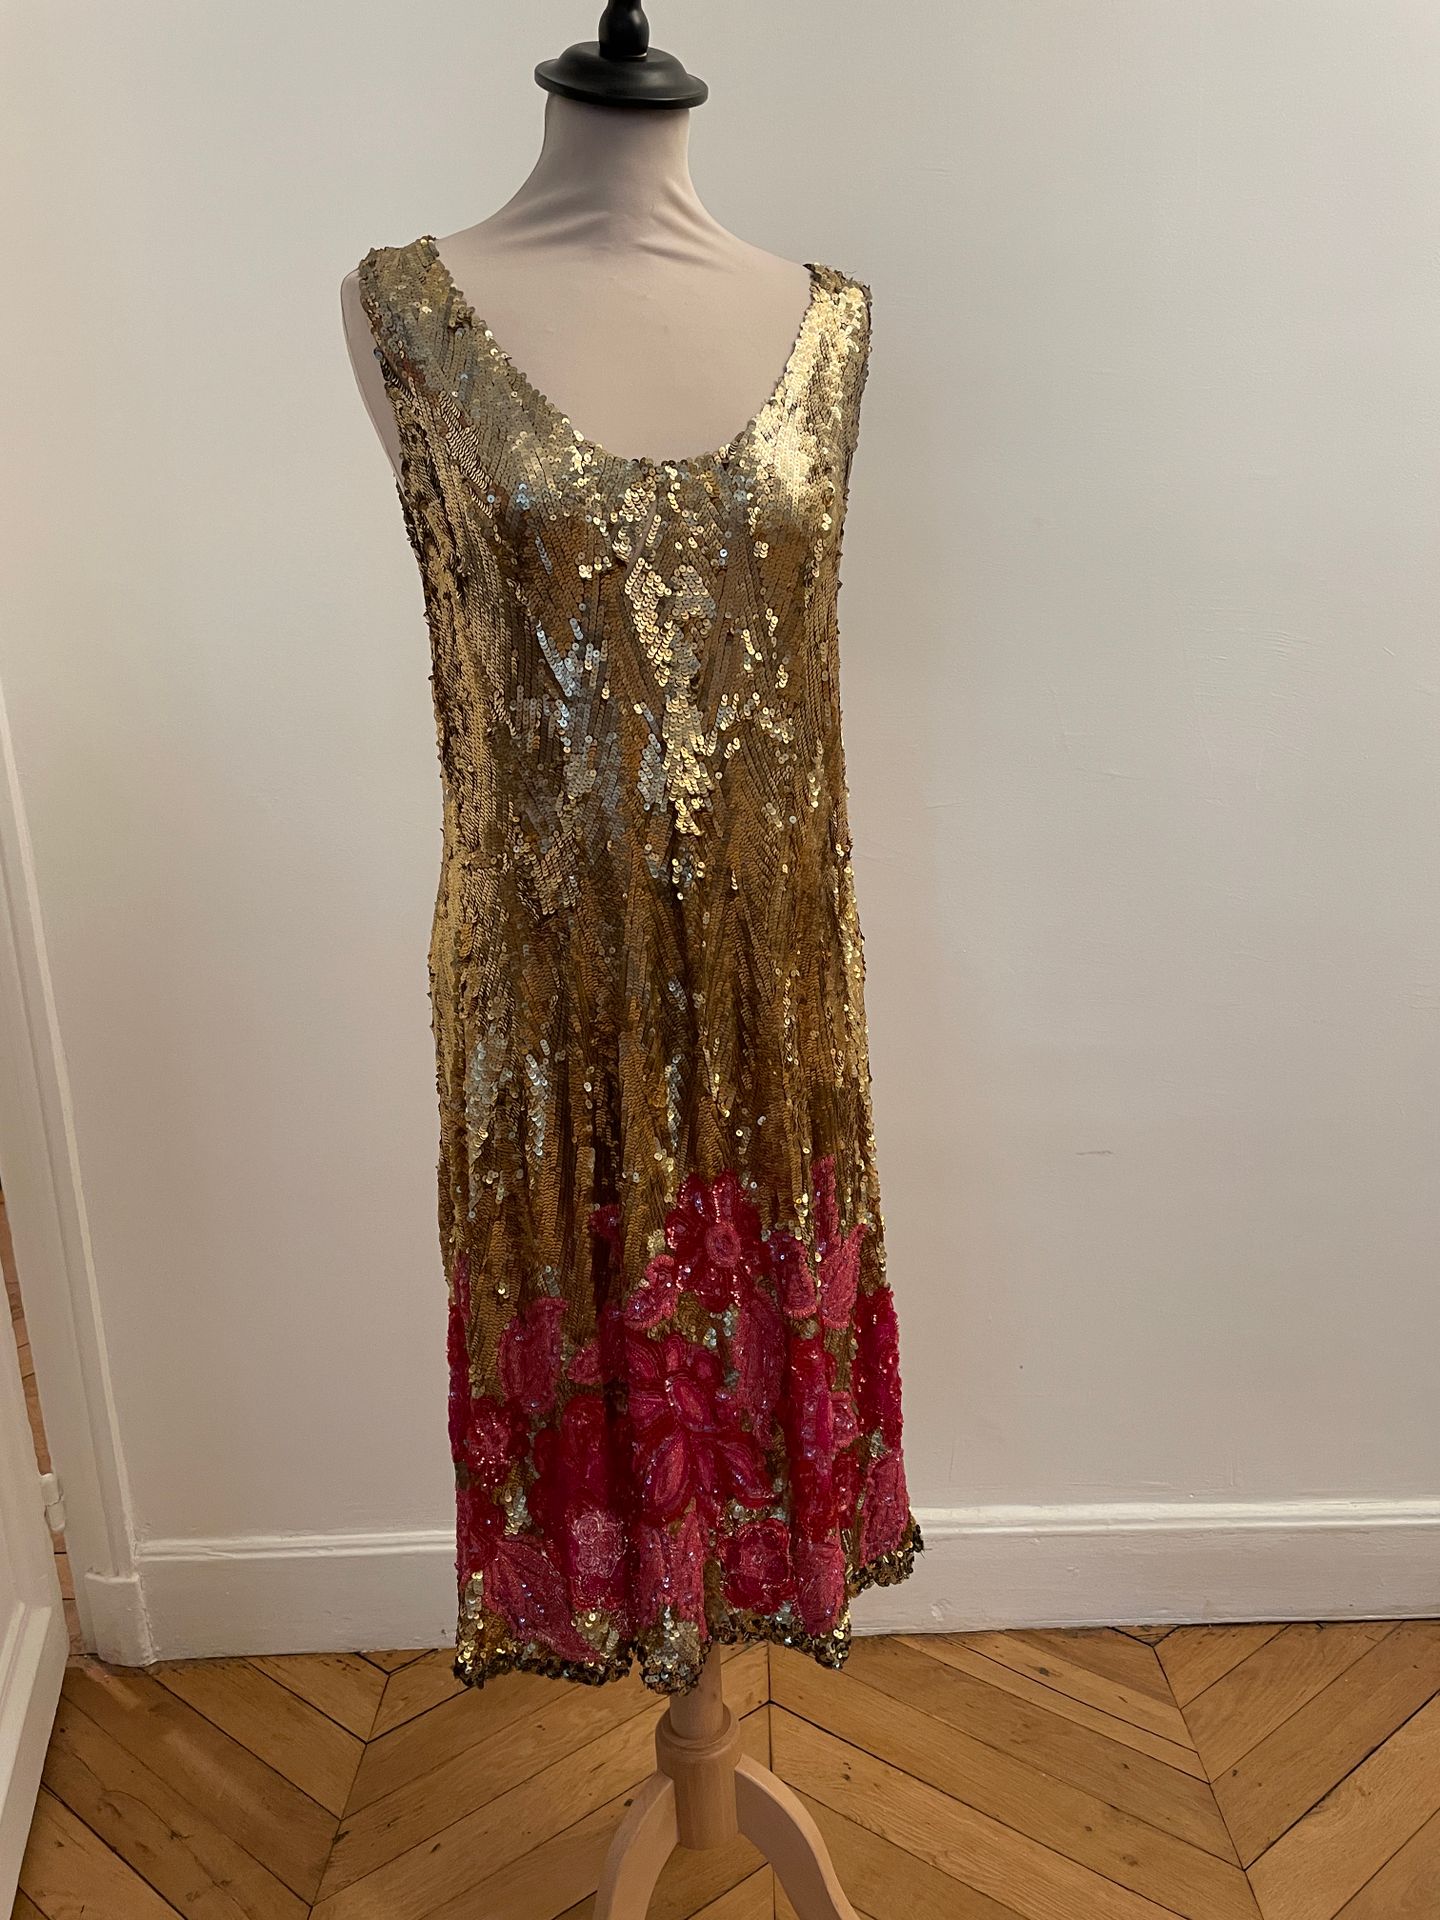 Null 非常漂亮的裙子，完全绣有金色亮片和粉色花朵的亮片和珍珠，无袖。

尺寸38/40左右。

肩部宽度为37厘米，从肩带到衣服底部的长度为101厘米

一&hellip;